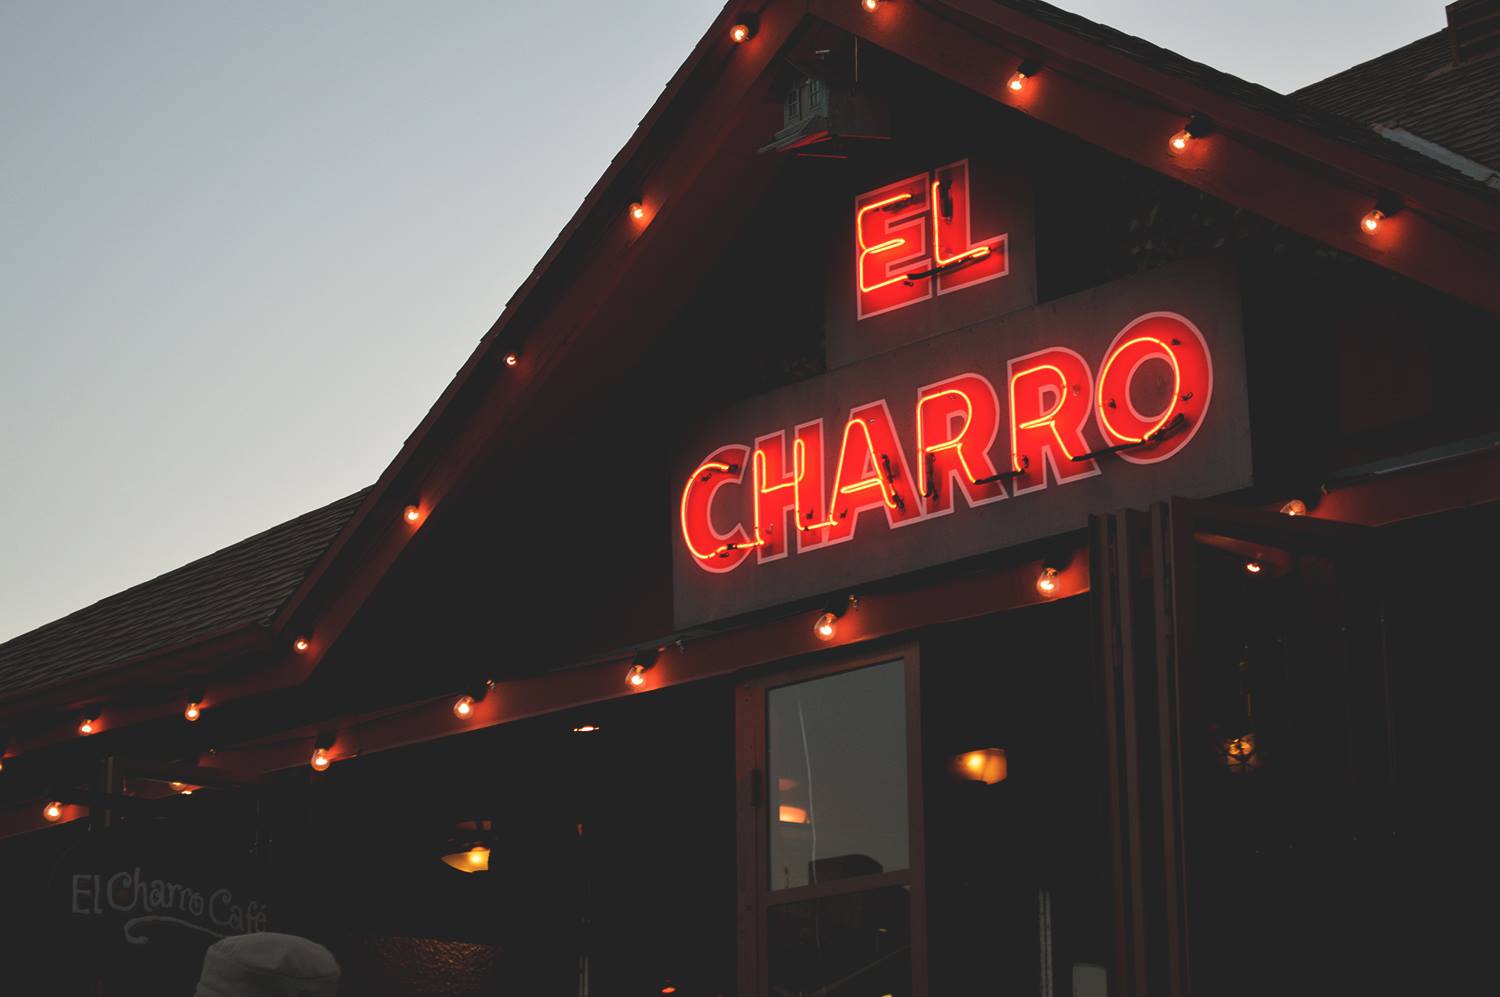 La propietaria del restaurante 'El Charro' recibió una gratificante sorpresa en su correo